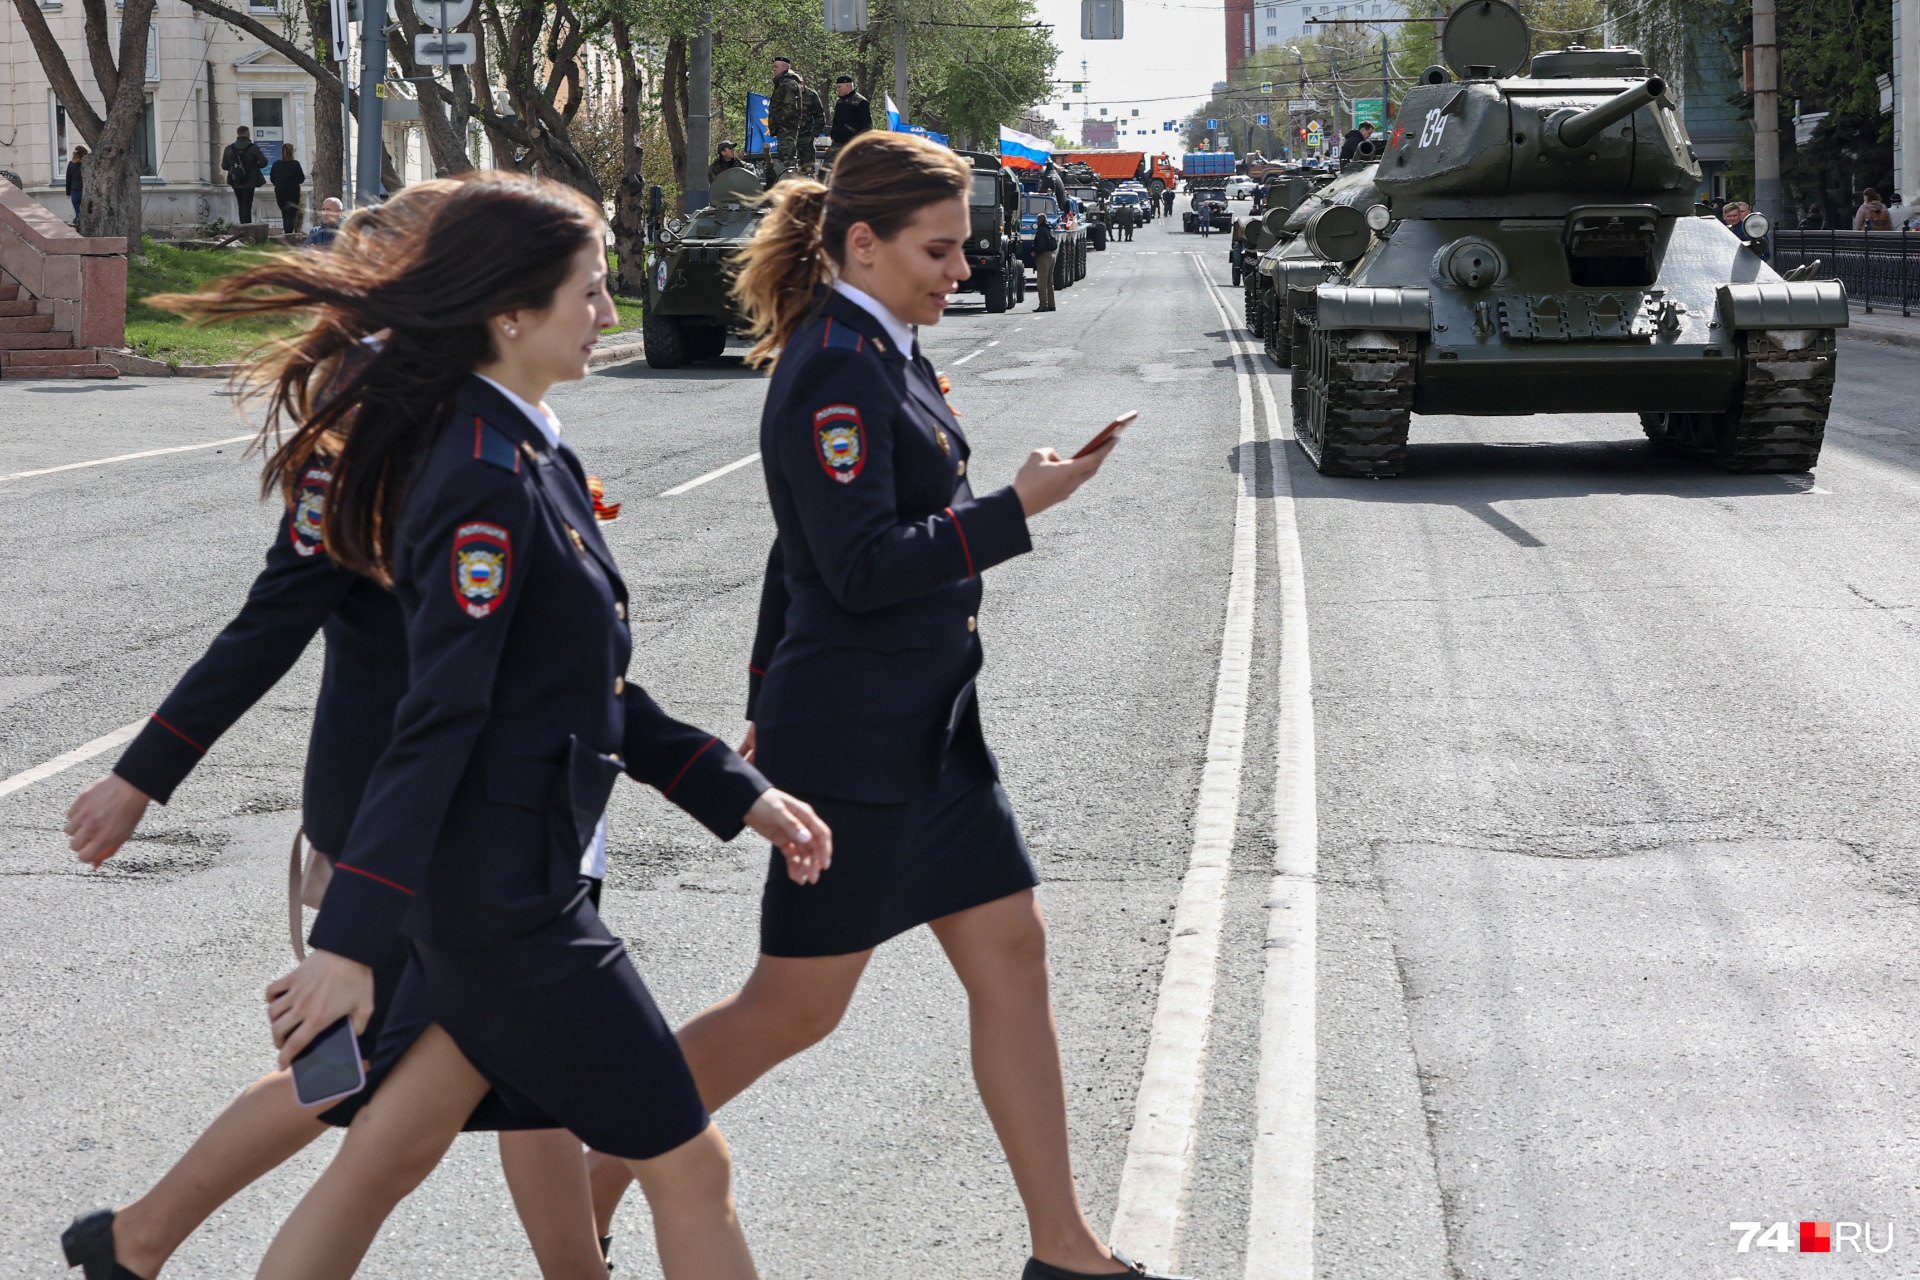 Танки по центру Челябинска проходят дважды в год — на самом параде 9 Мая и за несколько дней до него на генеральной репетиции 